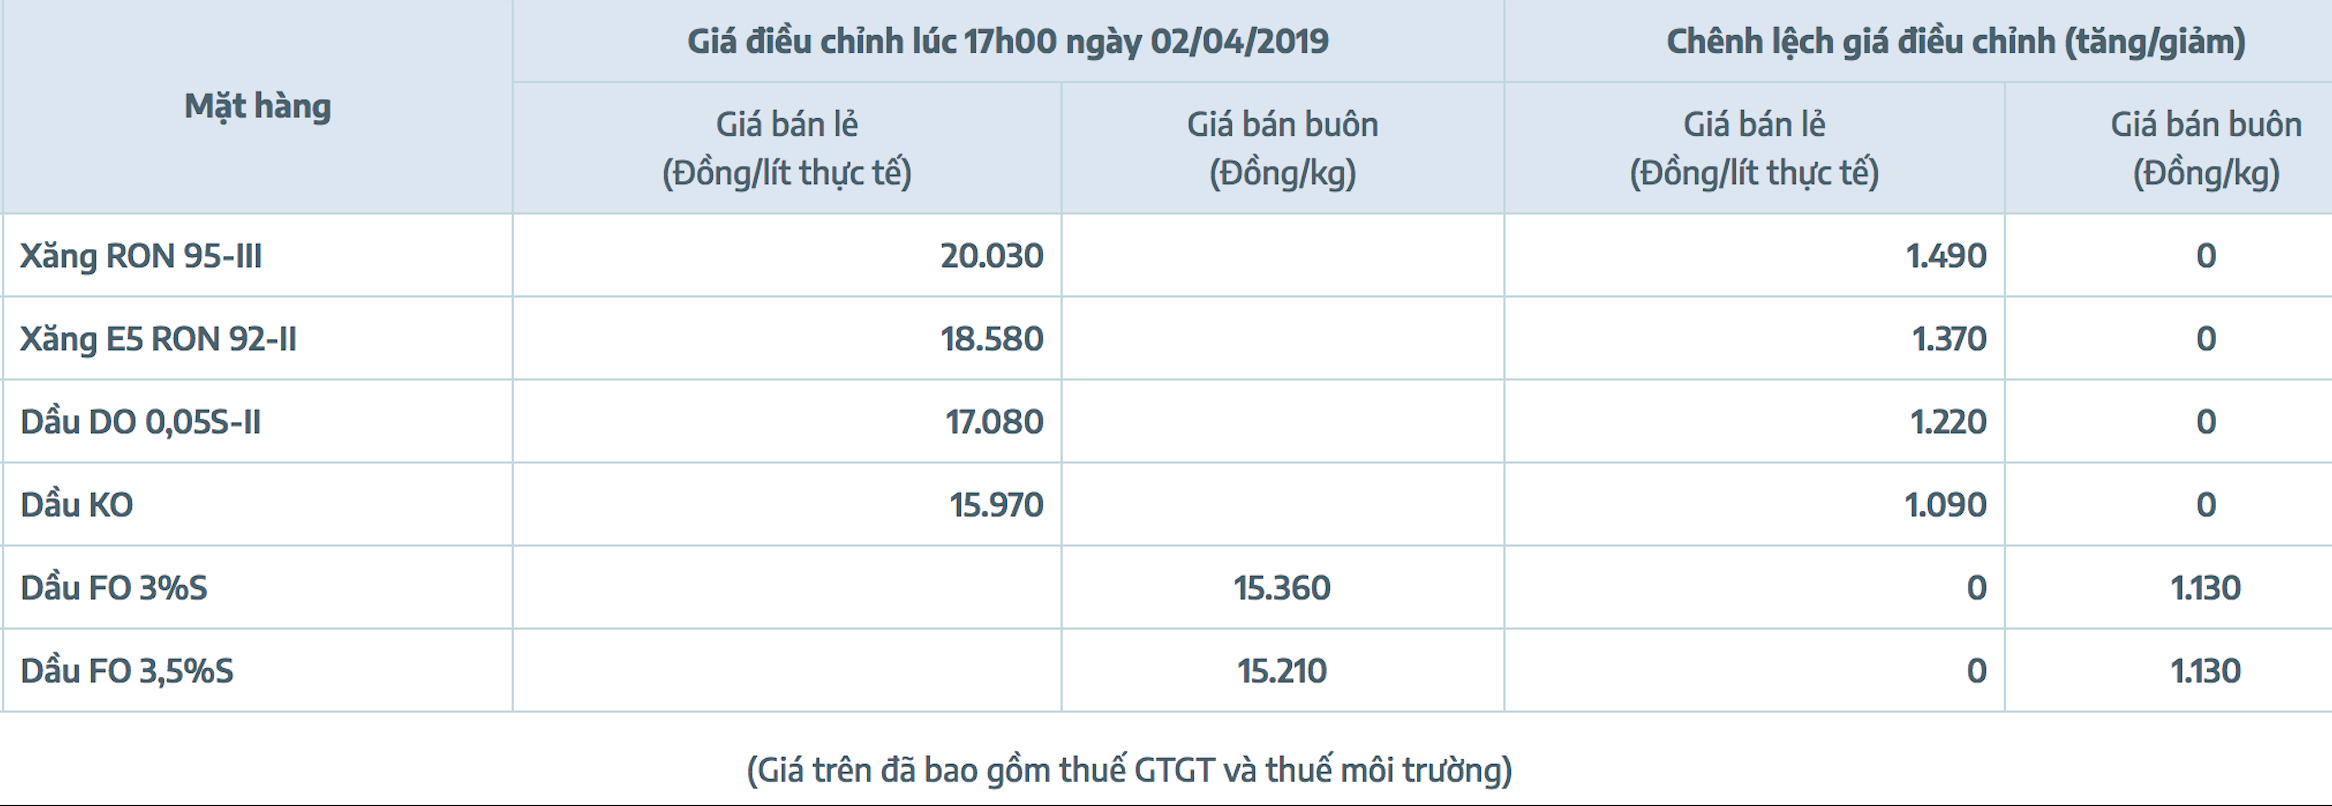 Bảng giá xăng dầu Việt Nam bao gồm giá Xăng E5RON92, Xăng RON95-III..